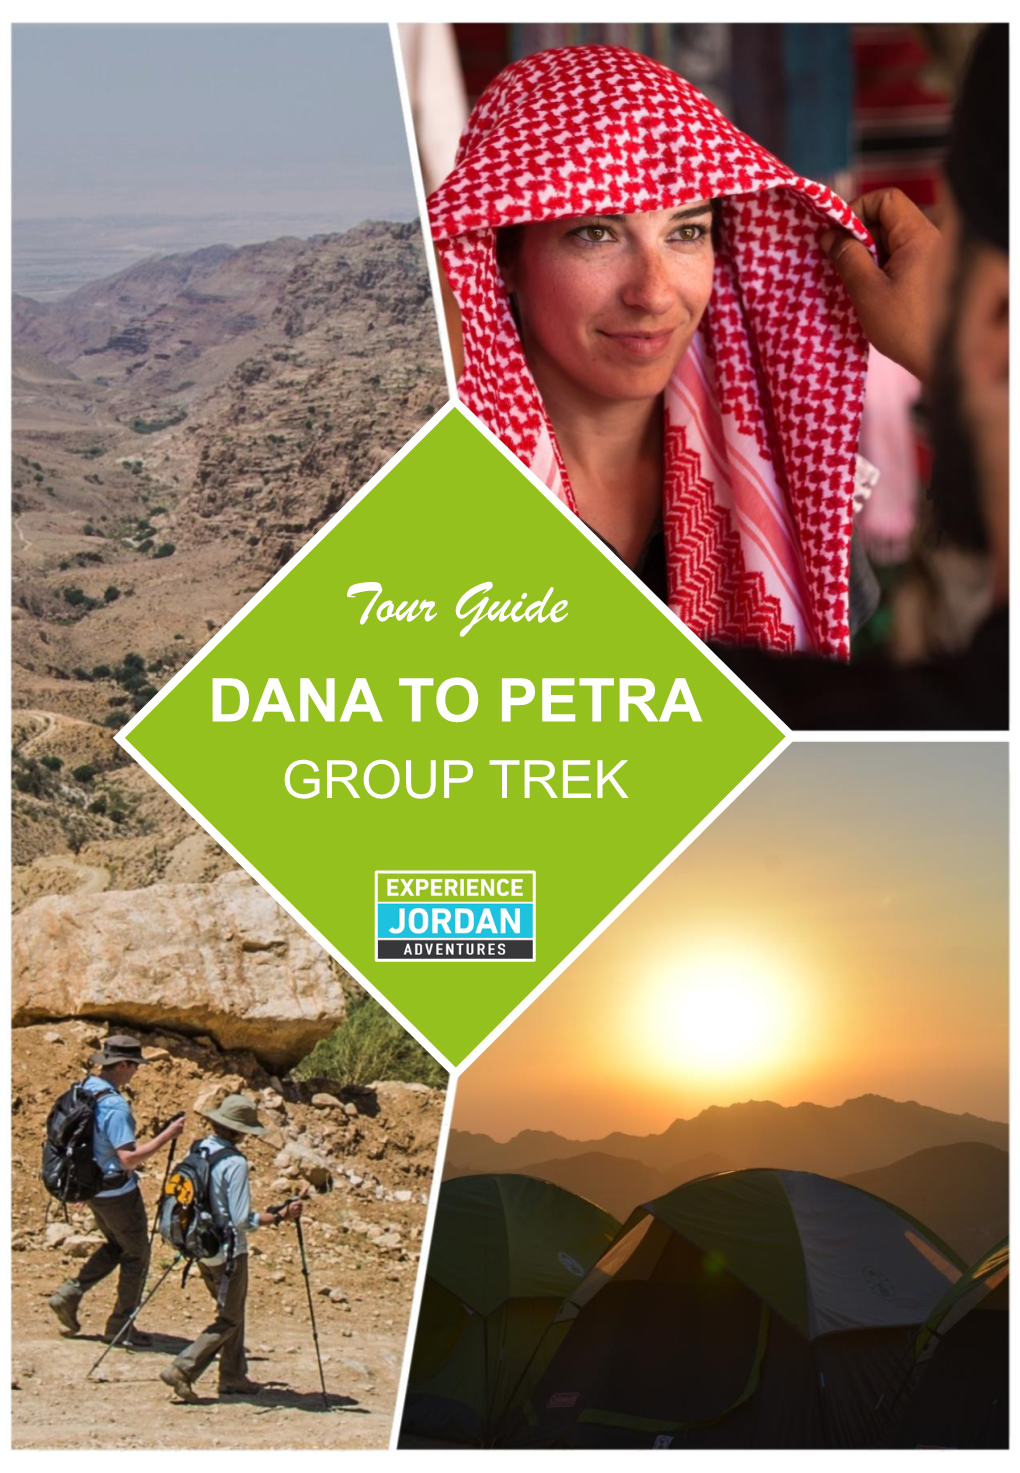 DANA to PETRA Tour Guide